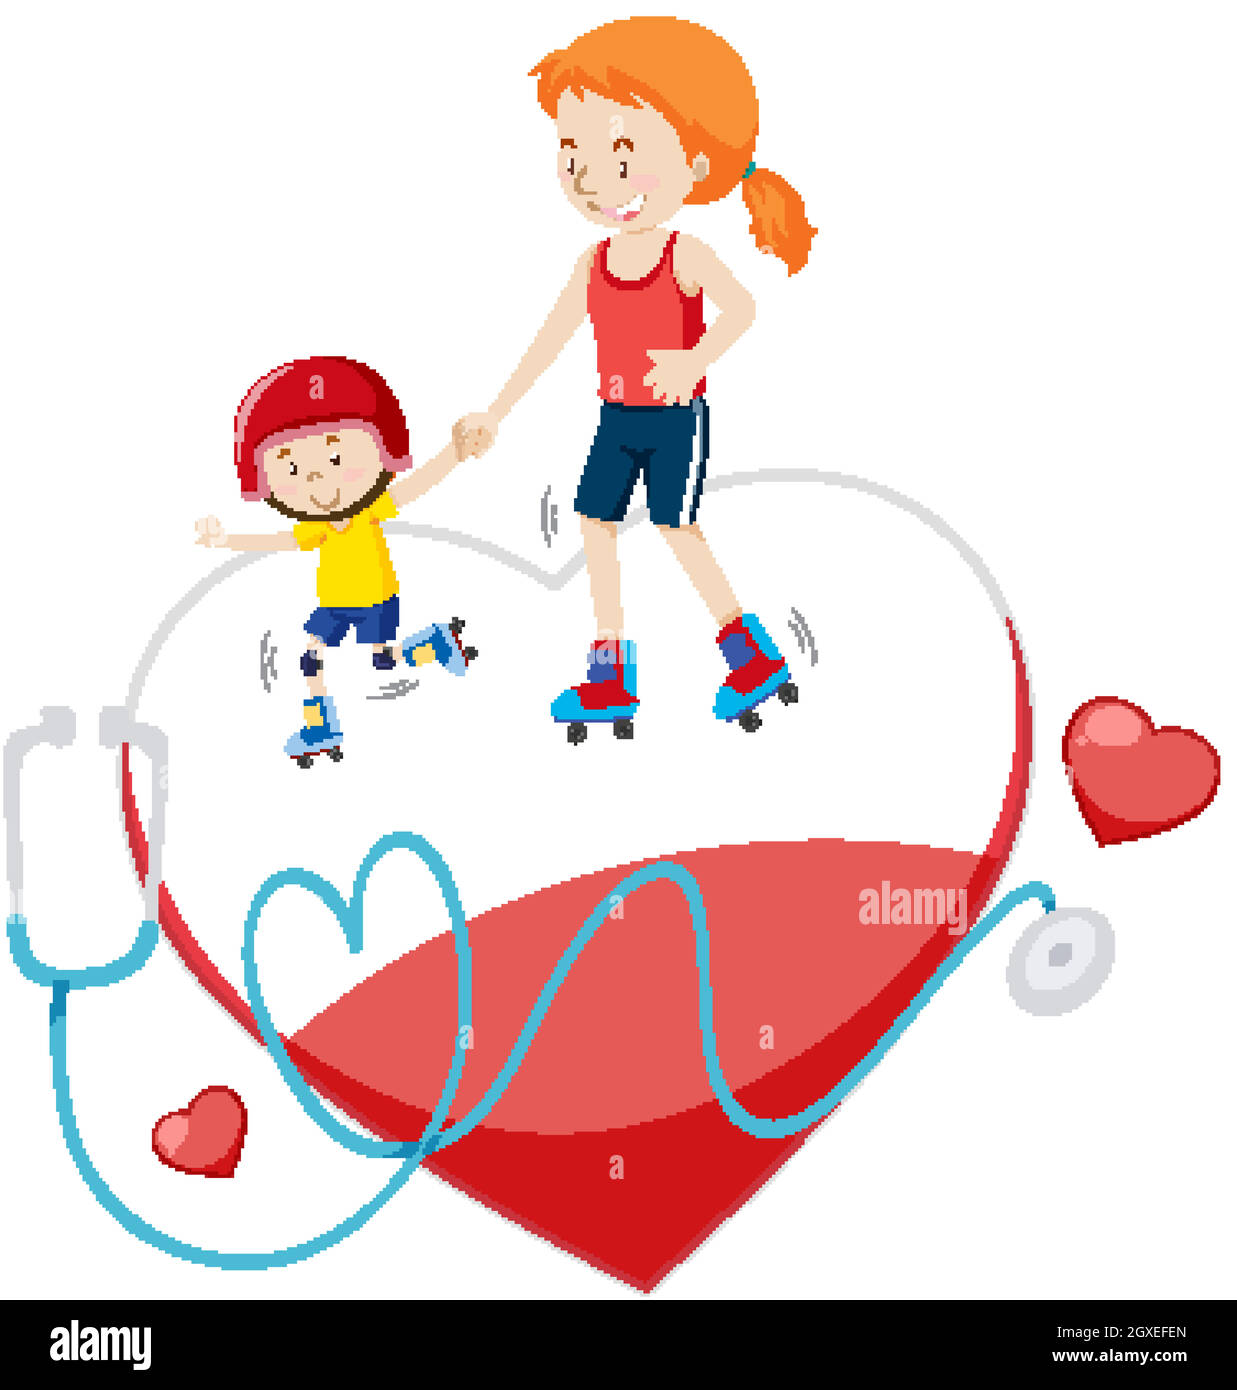 Mère et son skate sur grand coeur rouge Illustration de Vecteur